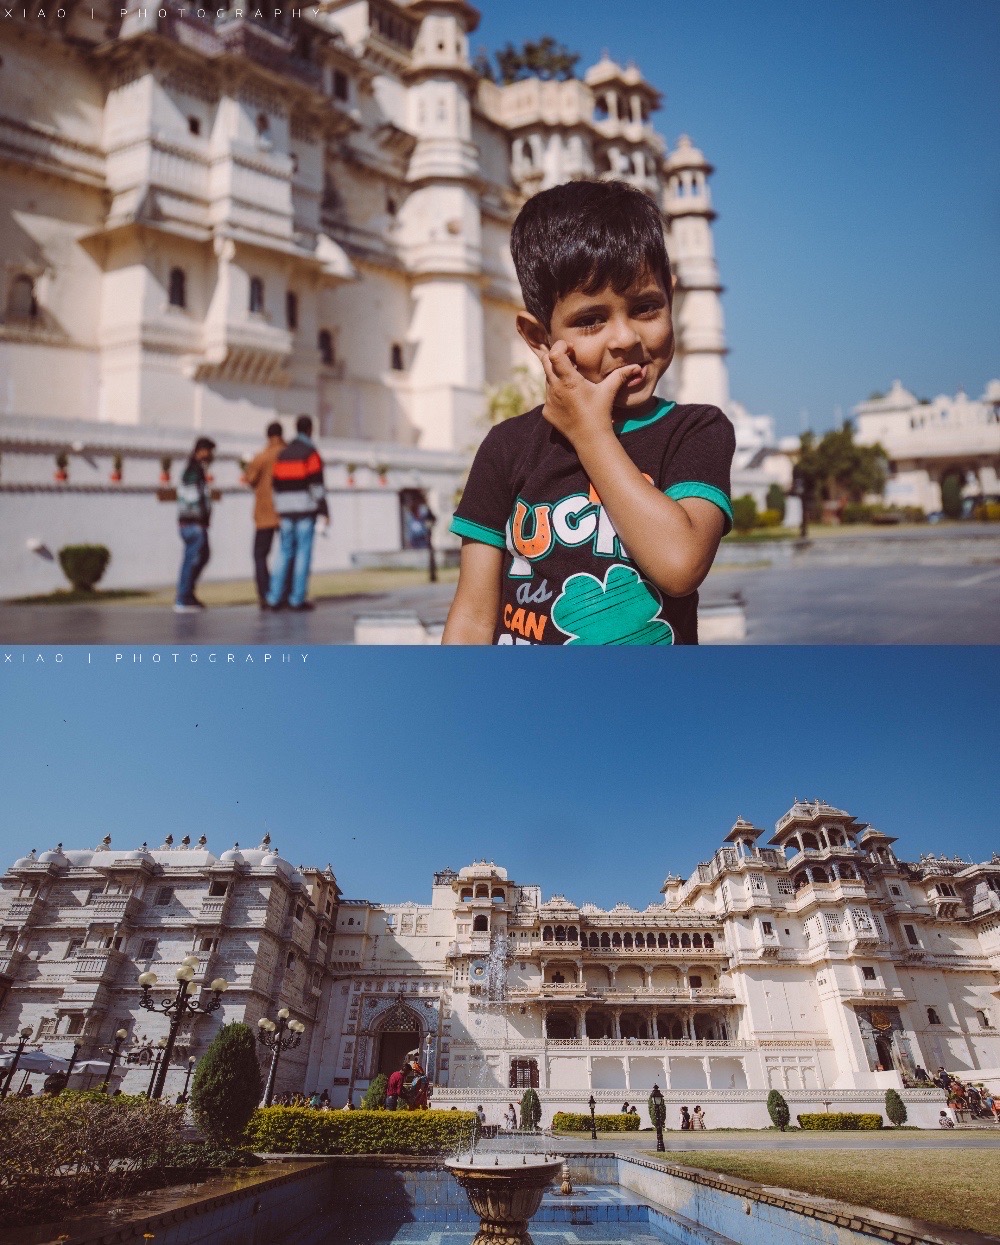 【乌代布尔城市王宫】  乌代布尔被称作印度的白色之城。在北印，拉贾斯坦邦还有蓝色之城焦特布尔、金色之